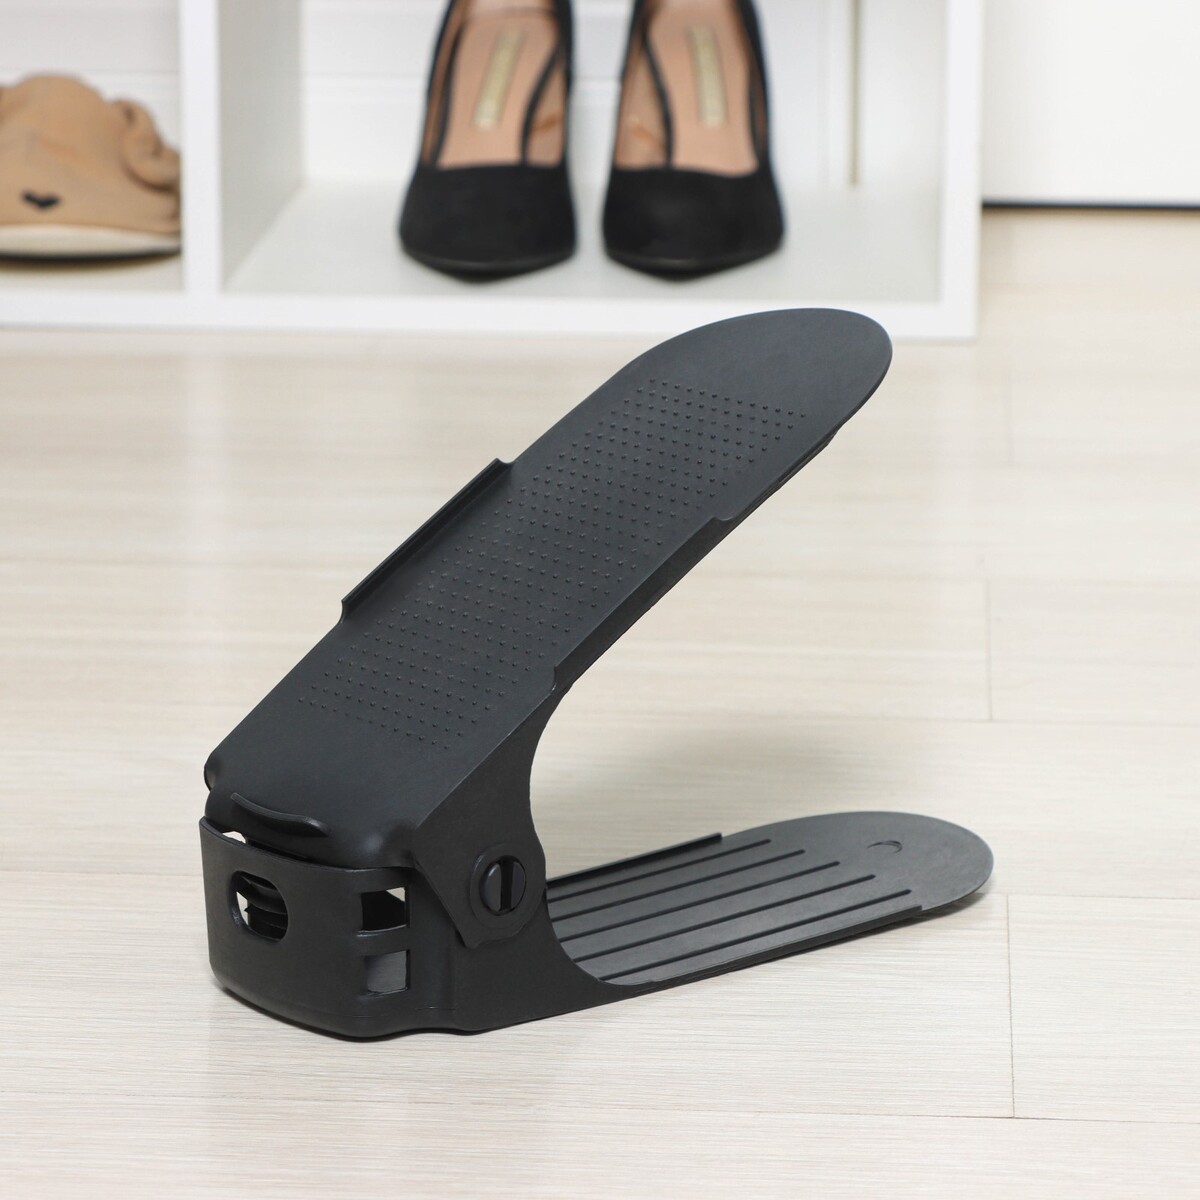 Подставка для хранения обуви регулируемая, 26×10×6 см, цвет черный подставка для обуви 5 и женева 35 1060 870 270 мм графит пдо ж35 гр